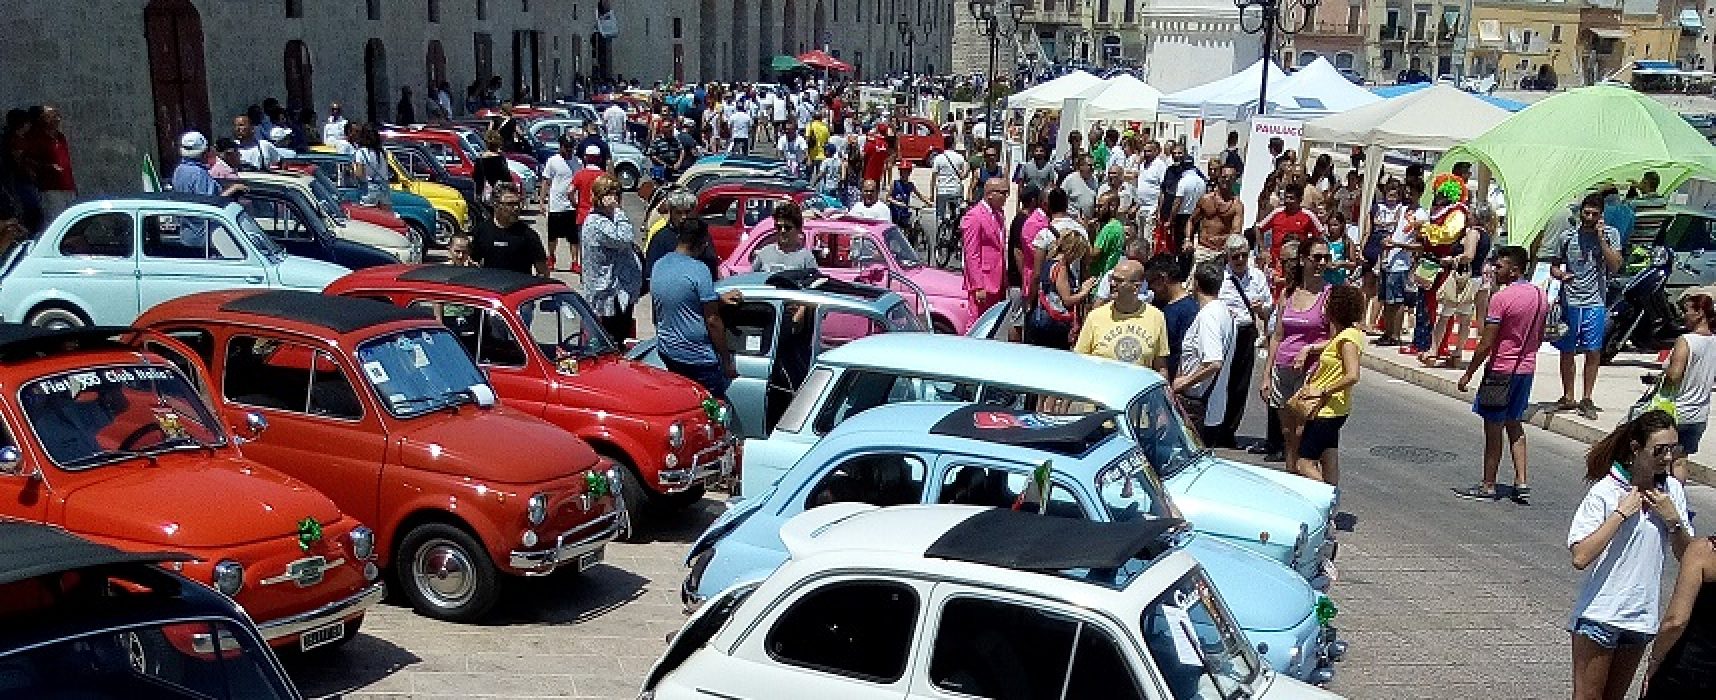 Le auto d’epoca del XVIII Raduno Fiat 500 colorano ed animano il waterfront